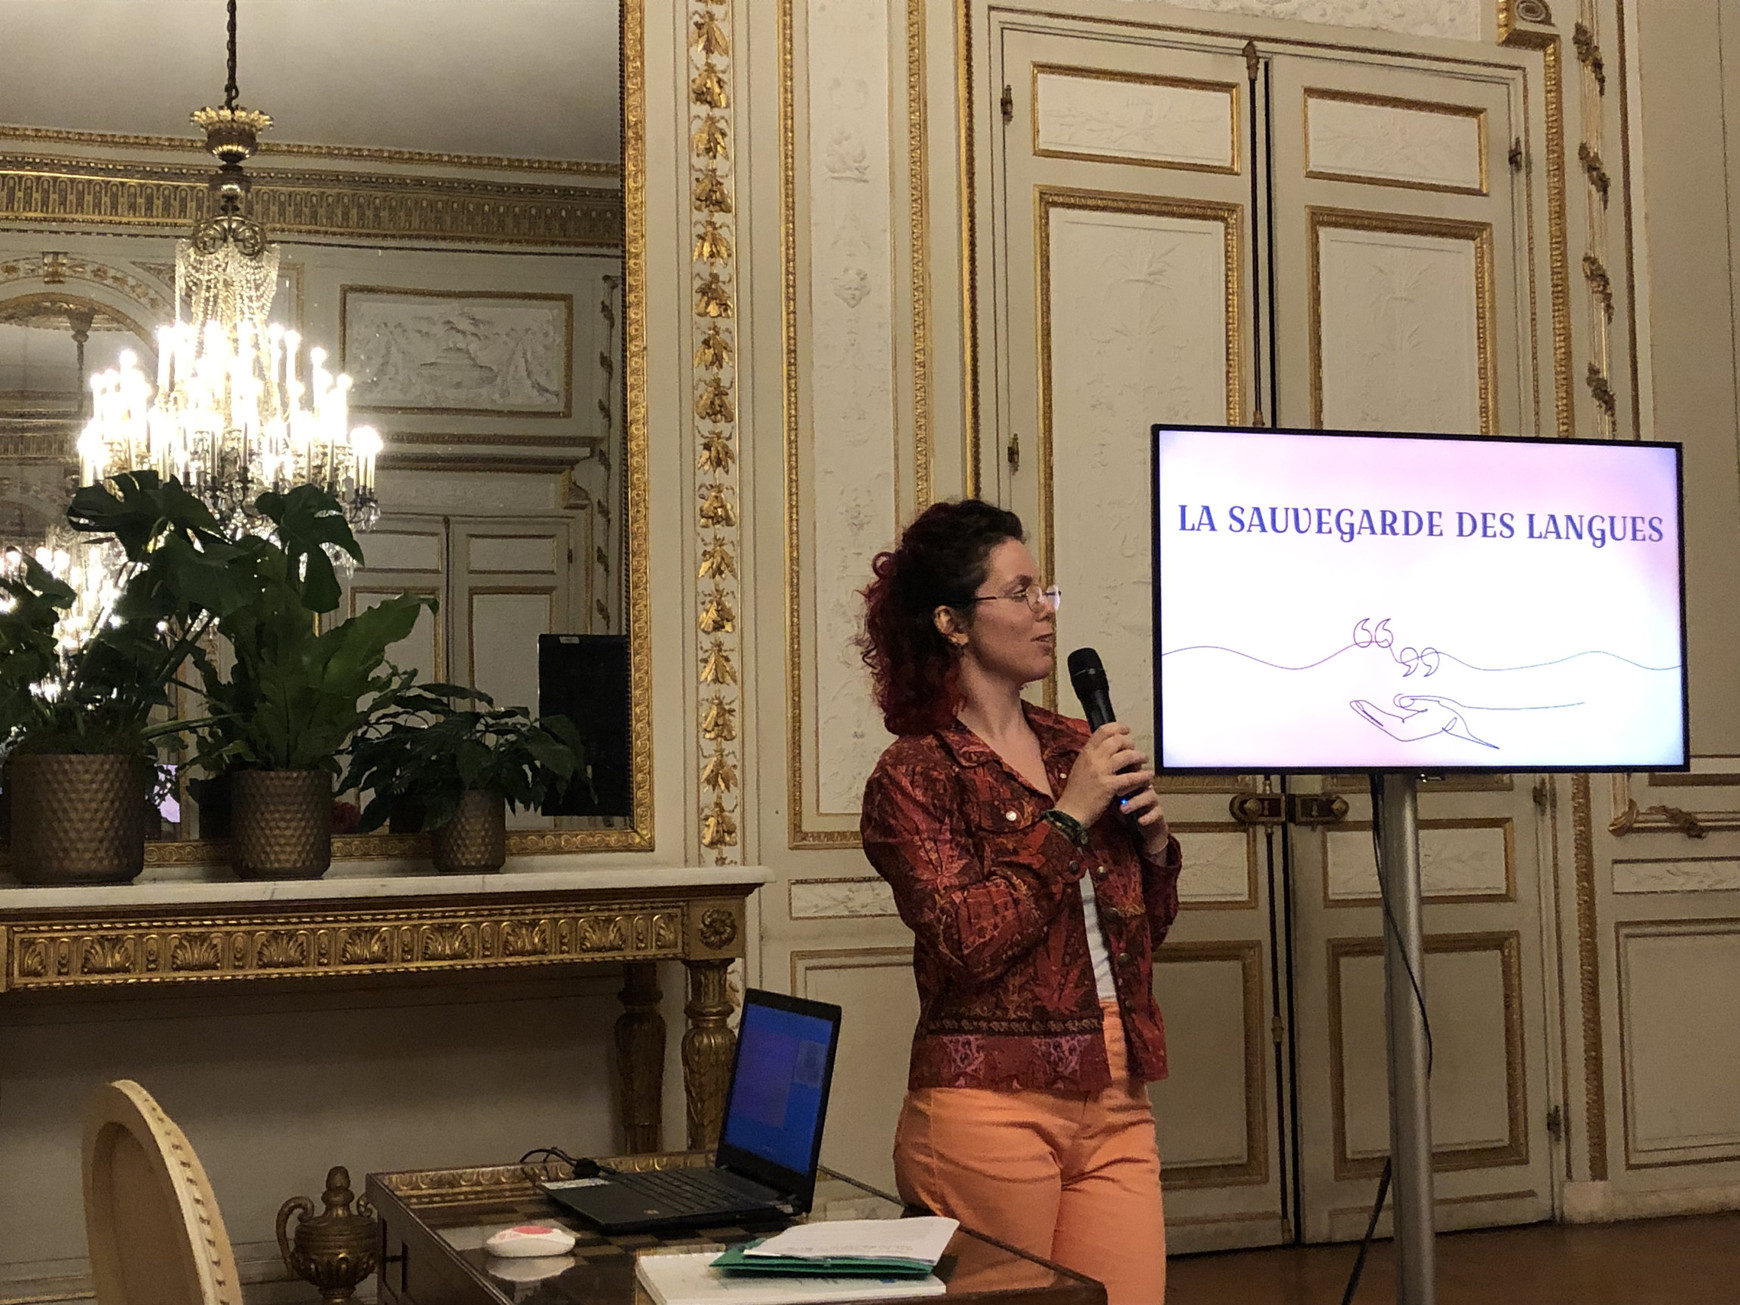 © Ville de Bordeaux. Marlène Viardot, ethnolinguiste donne une conférence sur la sauvegarde des langues. Bordeaux, février 2024. Protéger les langues minoritaires, avec Marlène Viardot